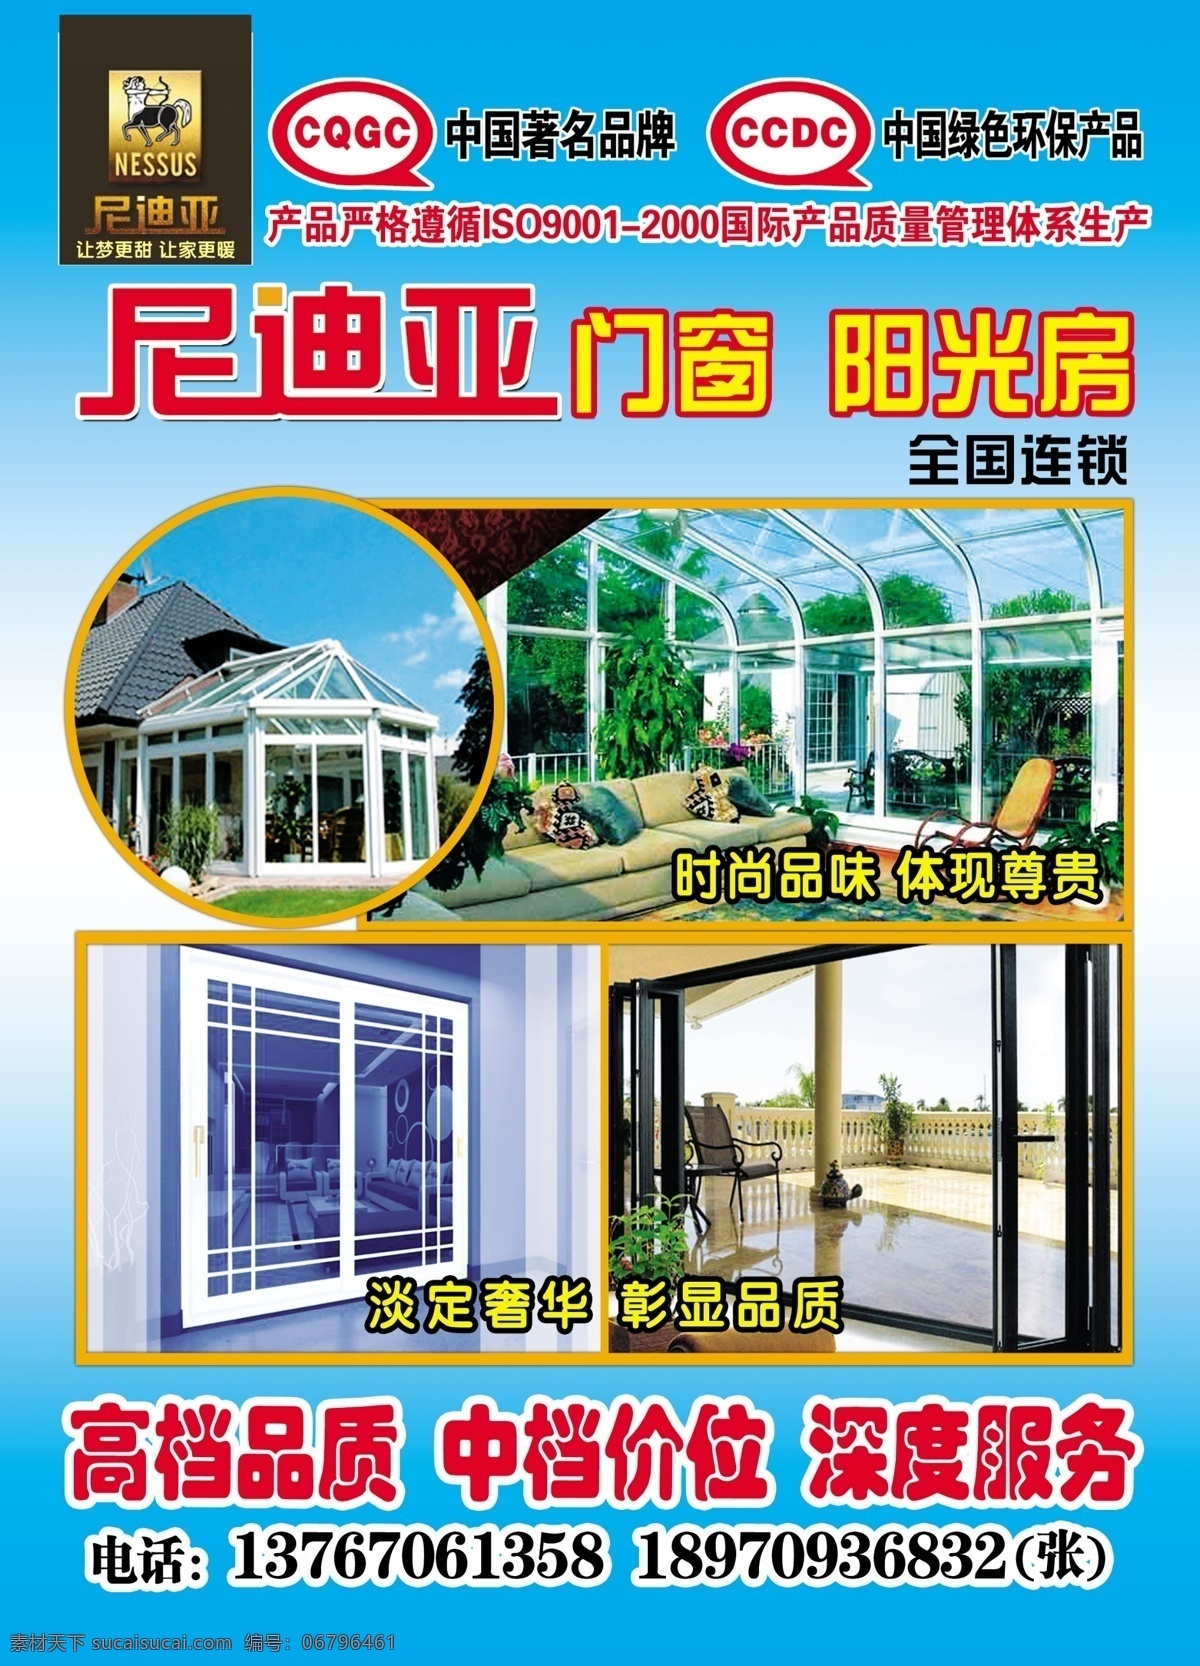 尼迪 亚 门窗 宣传单 尼迪亚 尼迪亚标志 标志 中国著名品牌 中国 绿色环保 产品 门窗图片 阳光房图片 玻璃门窗图片 dm宣传单 广告设计模板 源文件